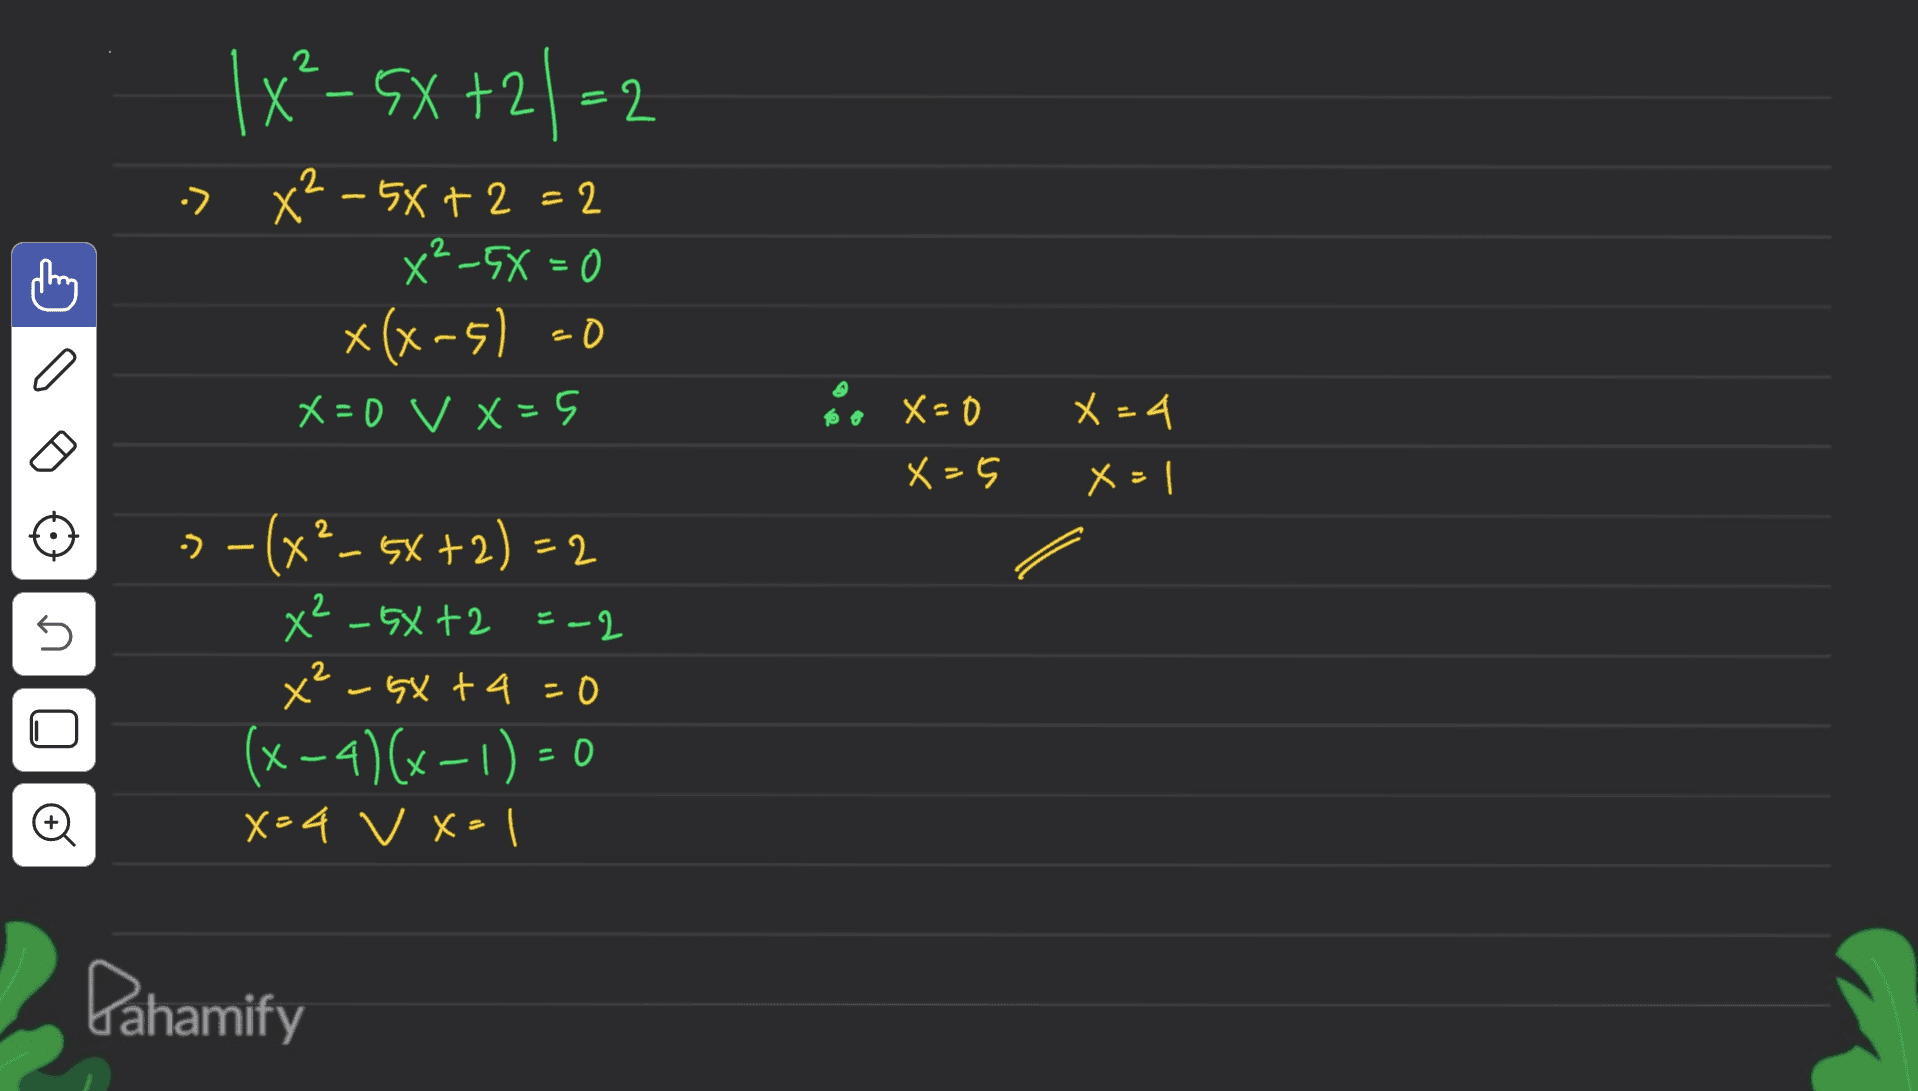 1x²-5X+21=2 2 -> X² - 5x+2=2 2 x²_5X=0 x(x-5) =0 X=0 v X=5 X=4 X=0 x=5 x=1 U - -(x²–5x+2) = 2 x² - GXt2 = -2 x² - GX +4=0 (x-4)(x-1) = 0 x=4 v x=1 U o Pahamify 